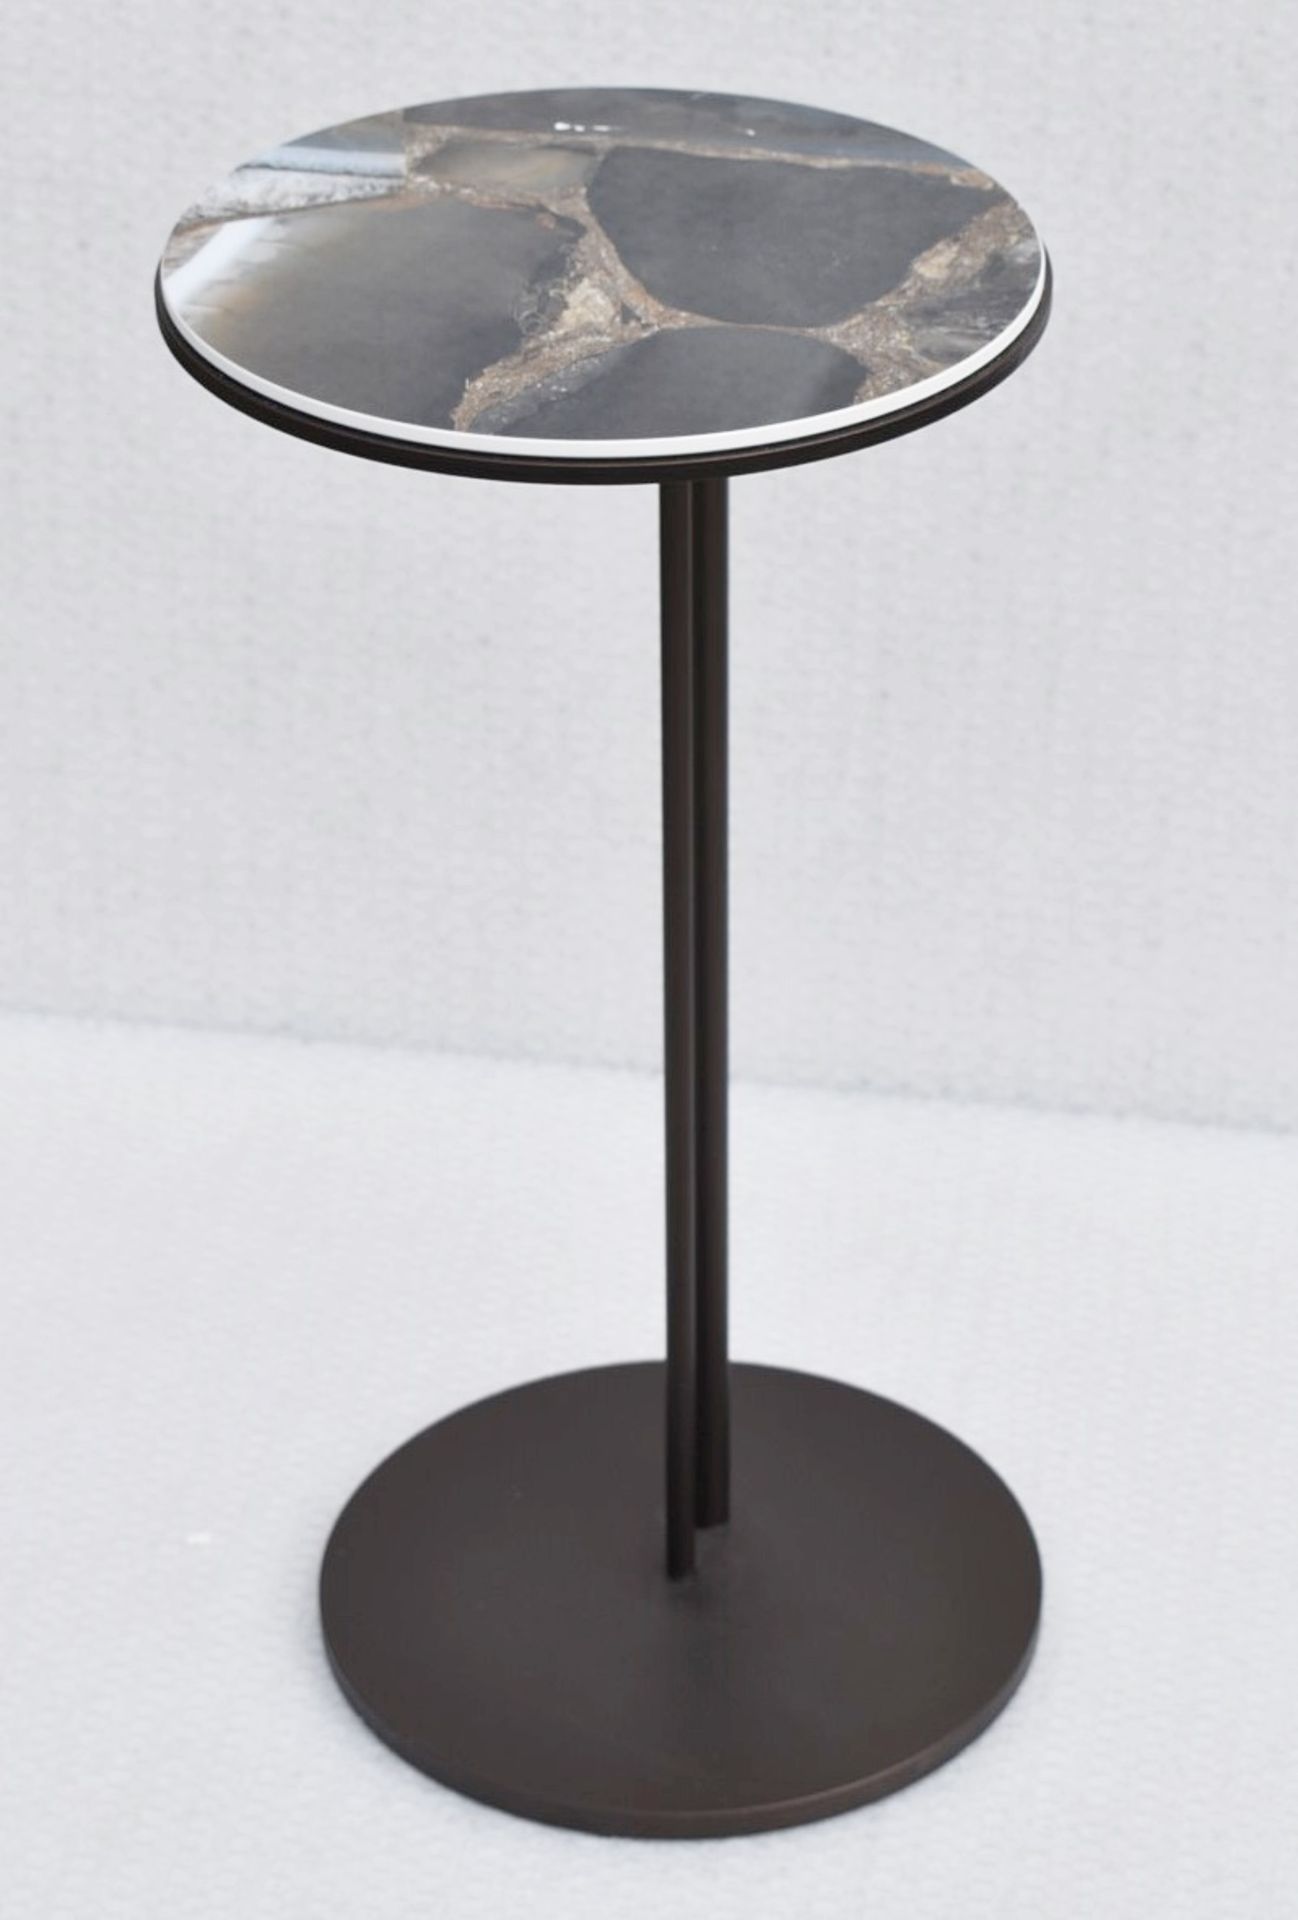 1 x CATTELAN ITALIA 'Sting' Italian Designer Side Table - Original Price £383.00 - Unused Boxed - Image 2 of 8